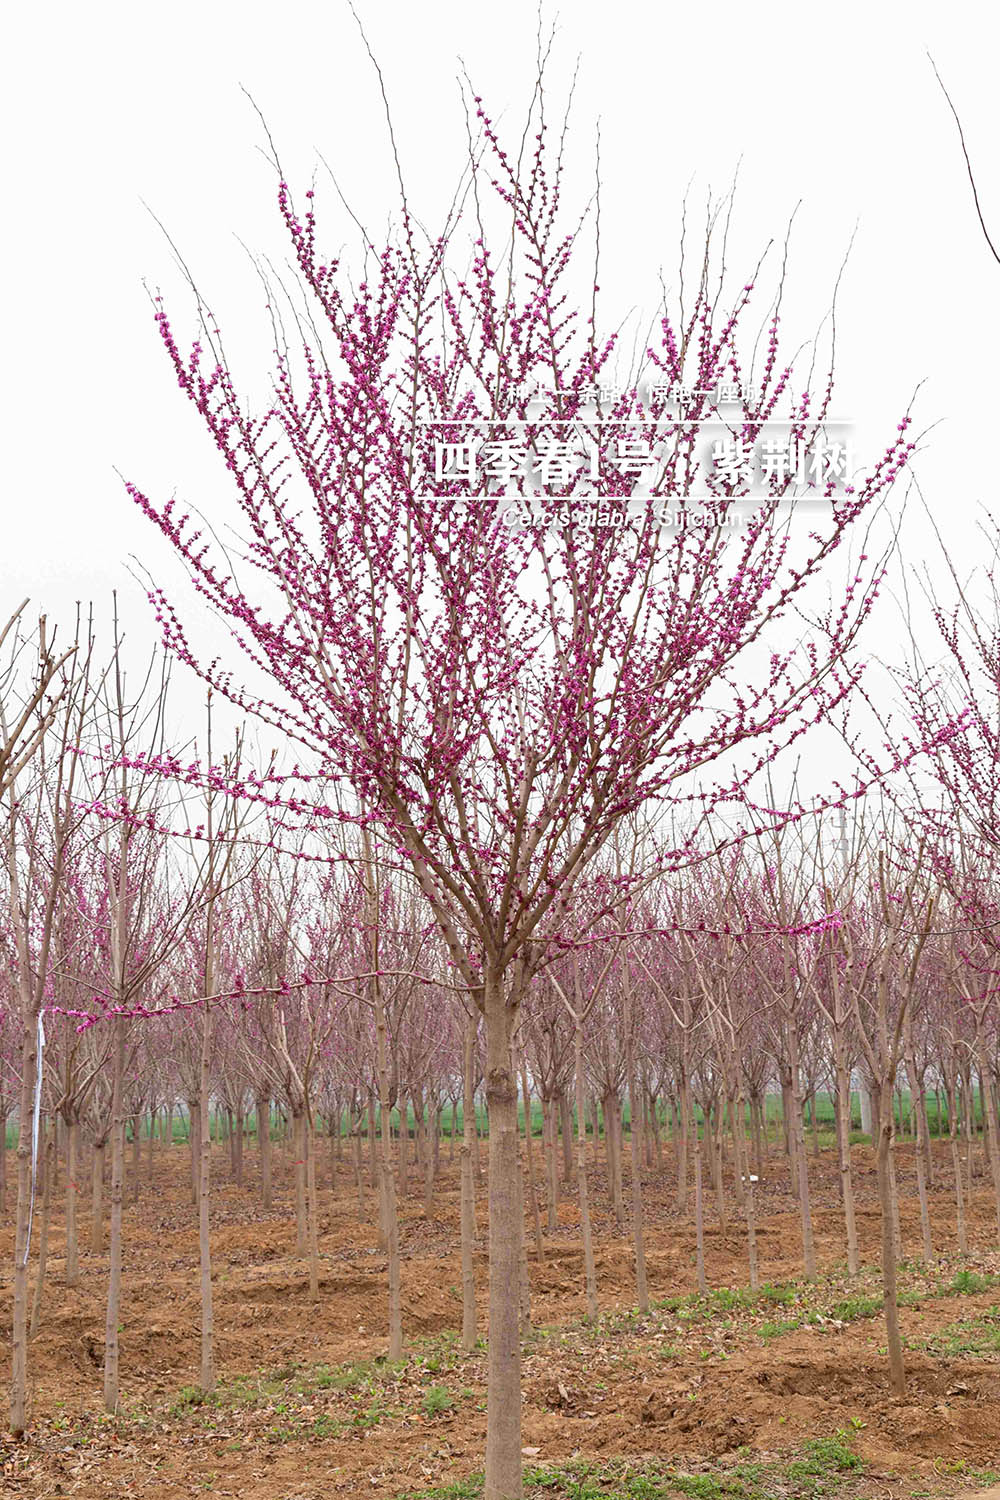 3.19“四季春一号”- 紫荆树